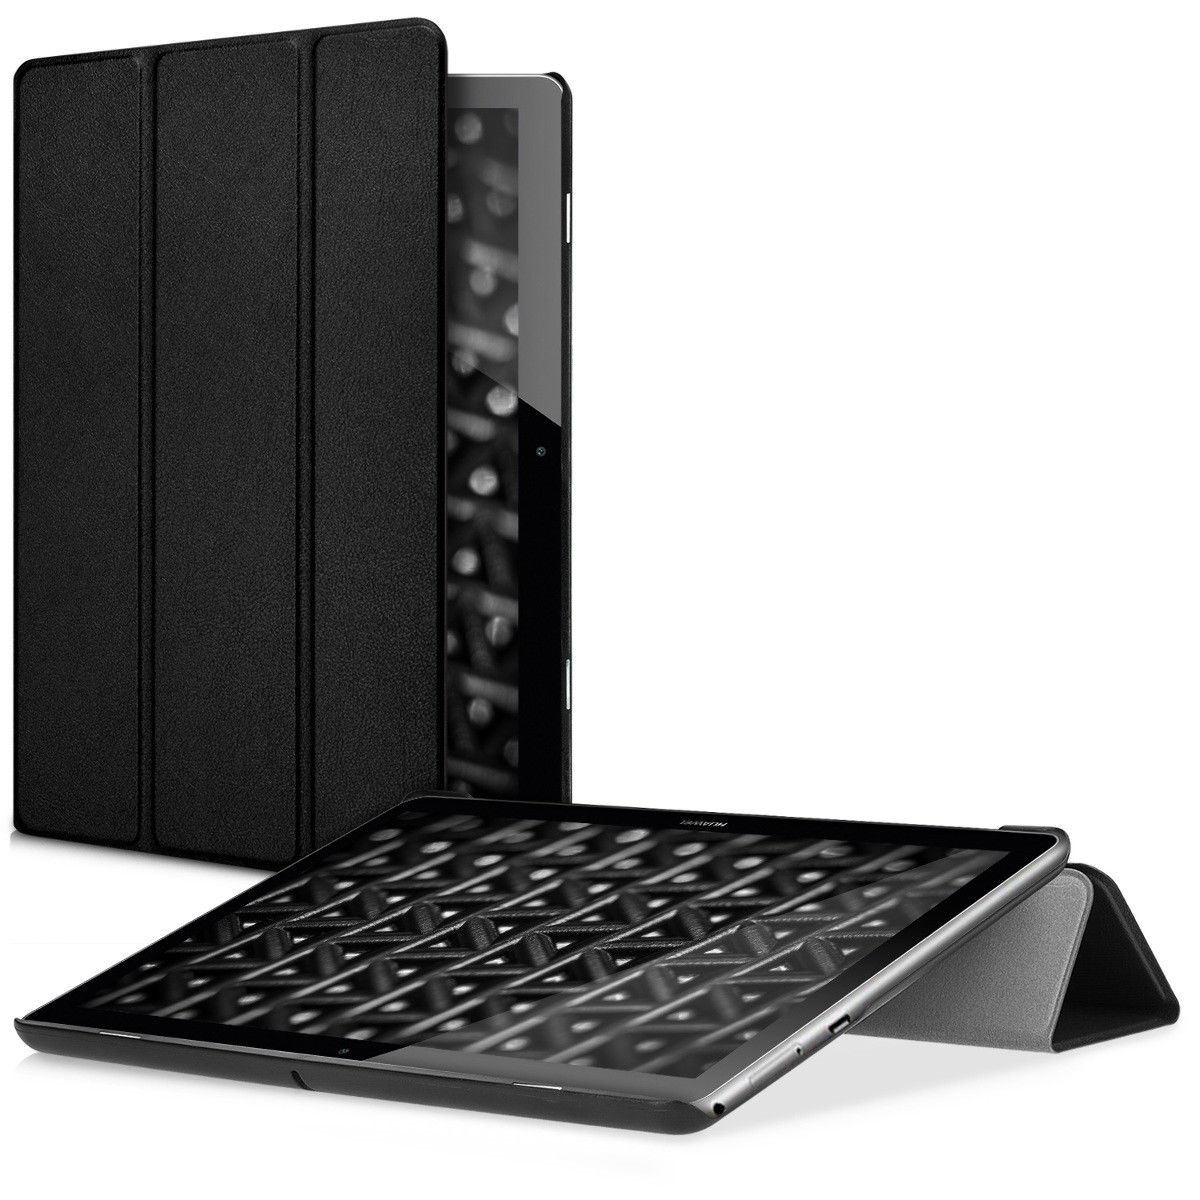 Pouzdro pro Huawei MediaPad T3 10 černé